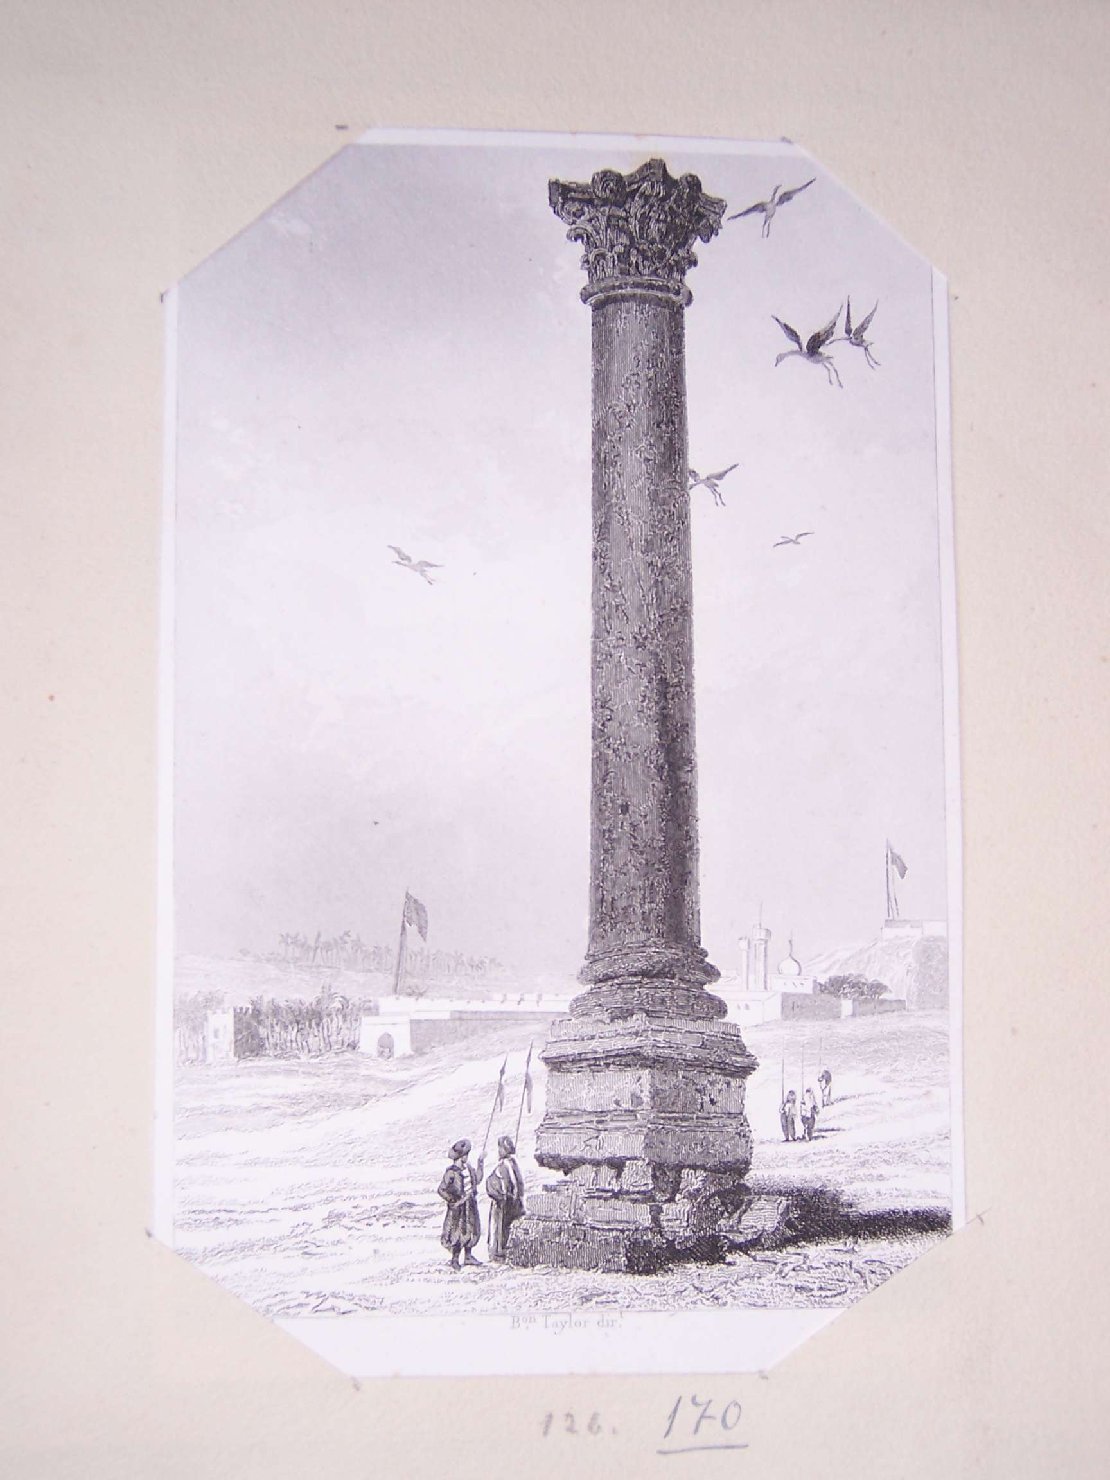 colonna romana nel deserto (stampa) di Dauzats Adrien, Finden William, Taylor Isidor Justin Severin Barone (sec. XIX)